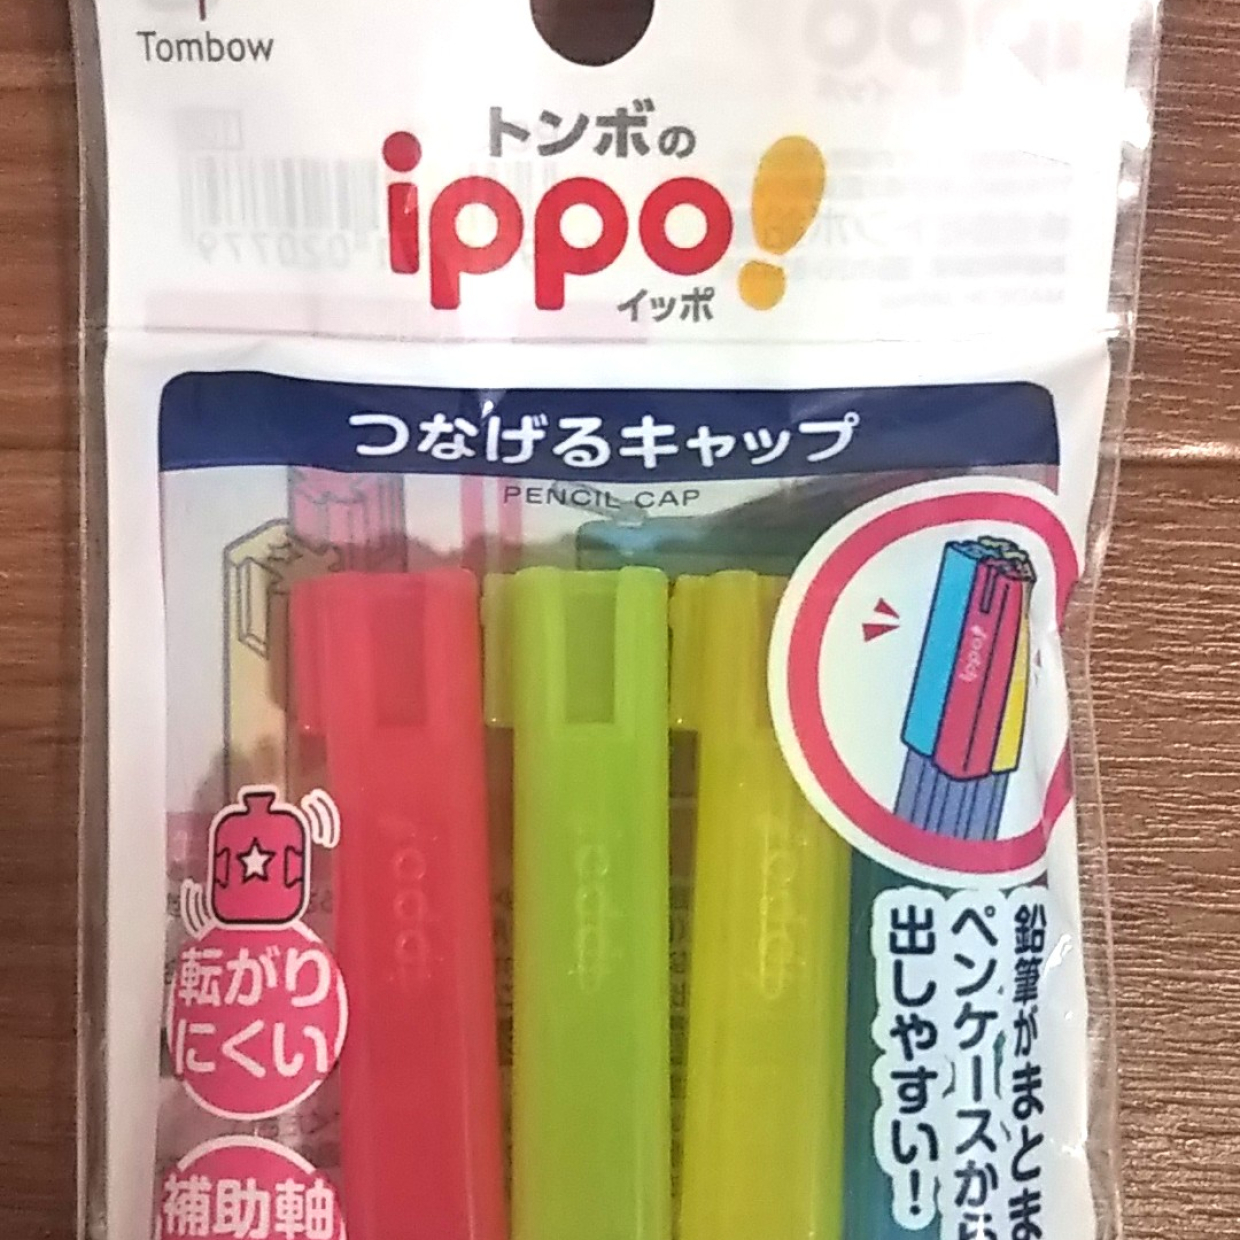  鉛筆がまとめられる画期的な鉛筆キャップ「ippo! つなげるキャップ」が便利すぎる♪ 